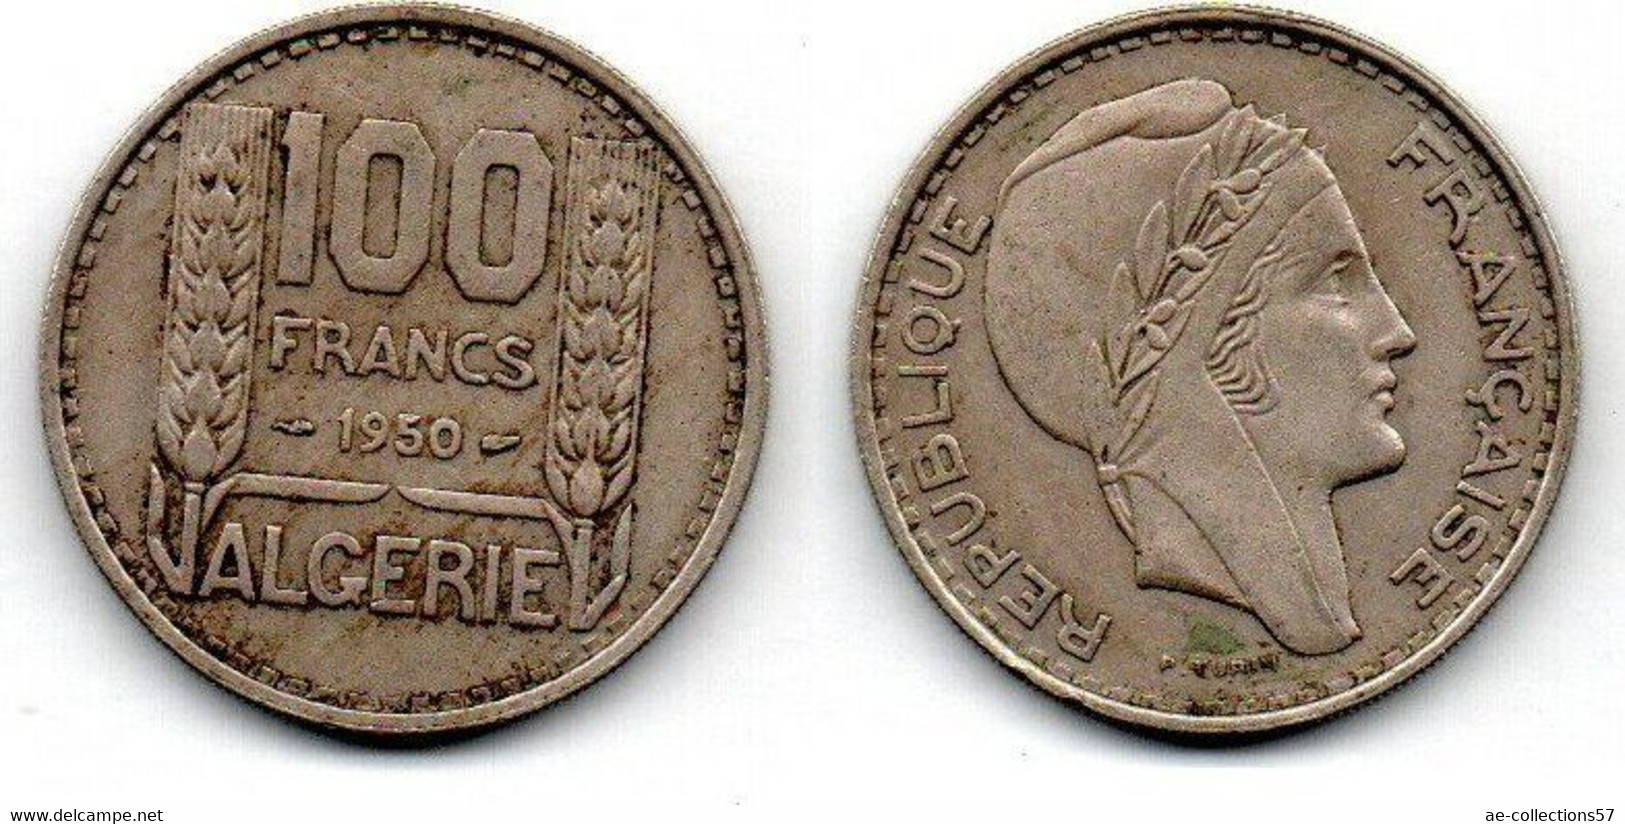 Algérie - Algéria - Algerien 100 Francs 1950 TTB - Algeria